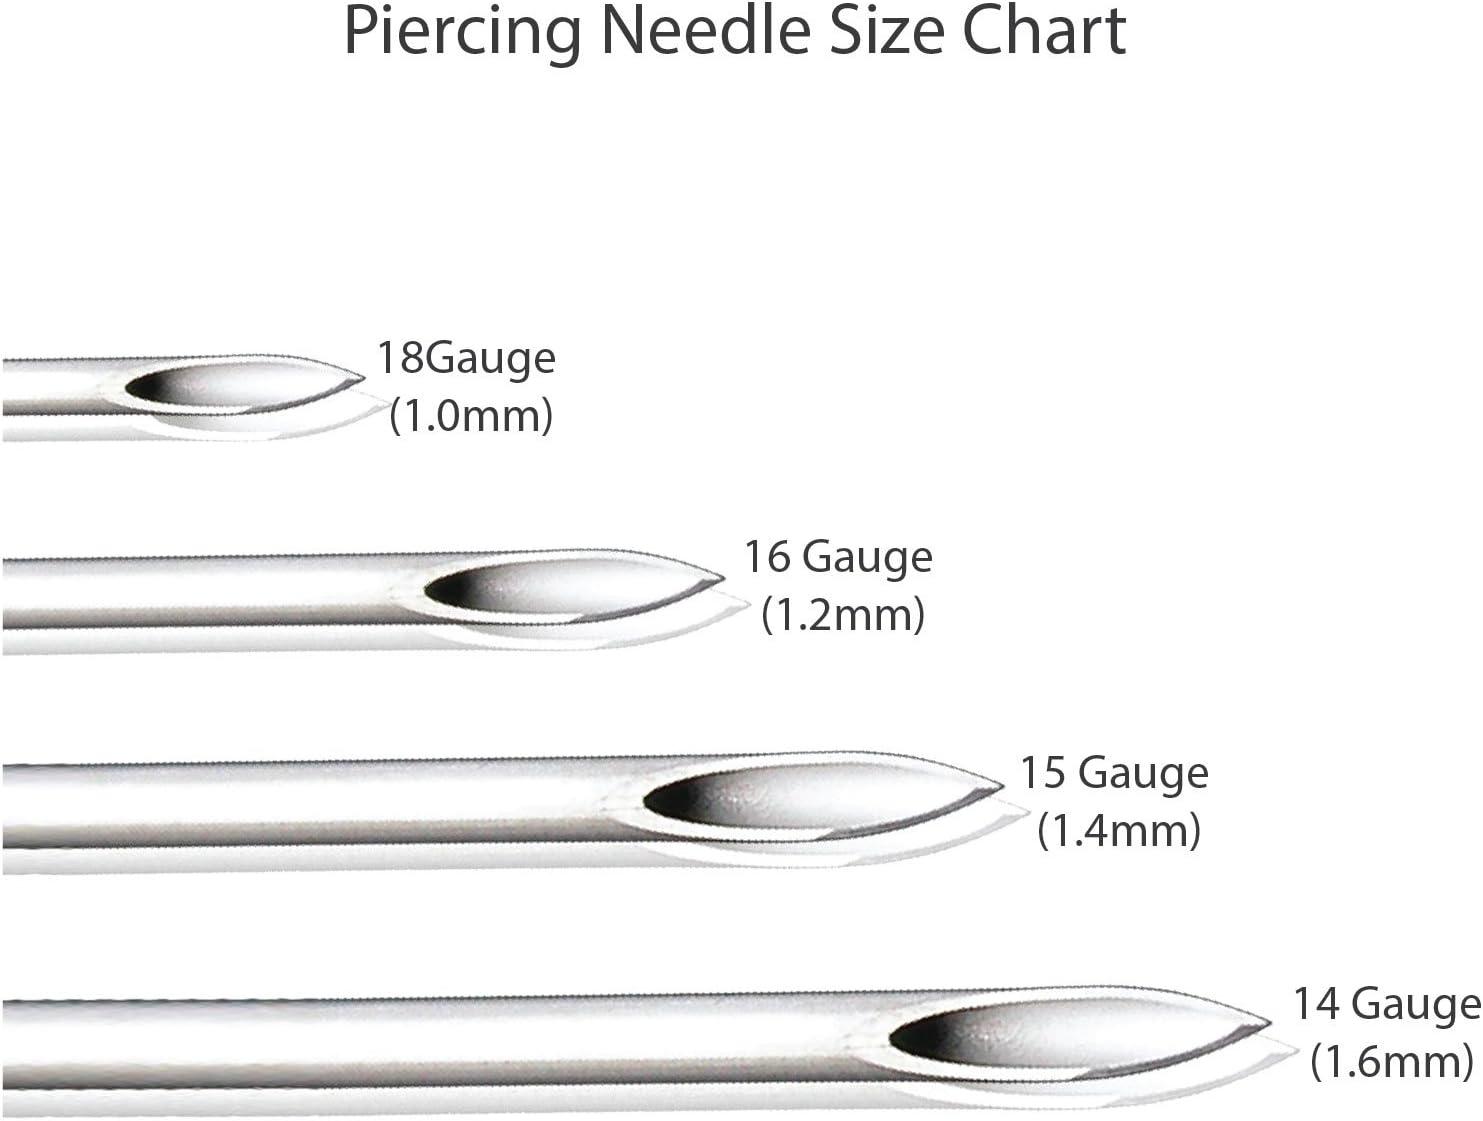  16 Gauge Needle